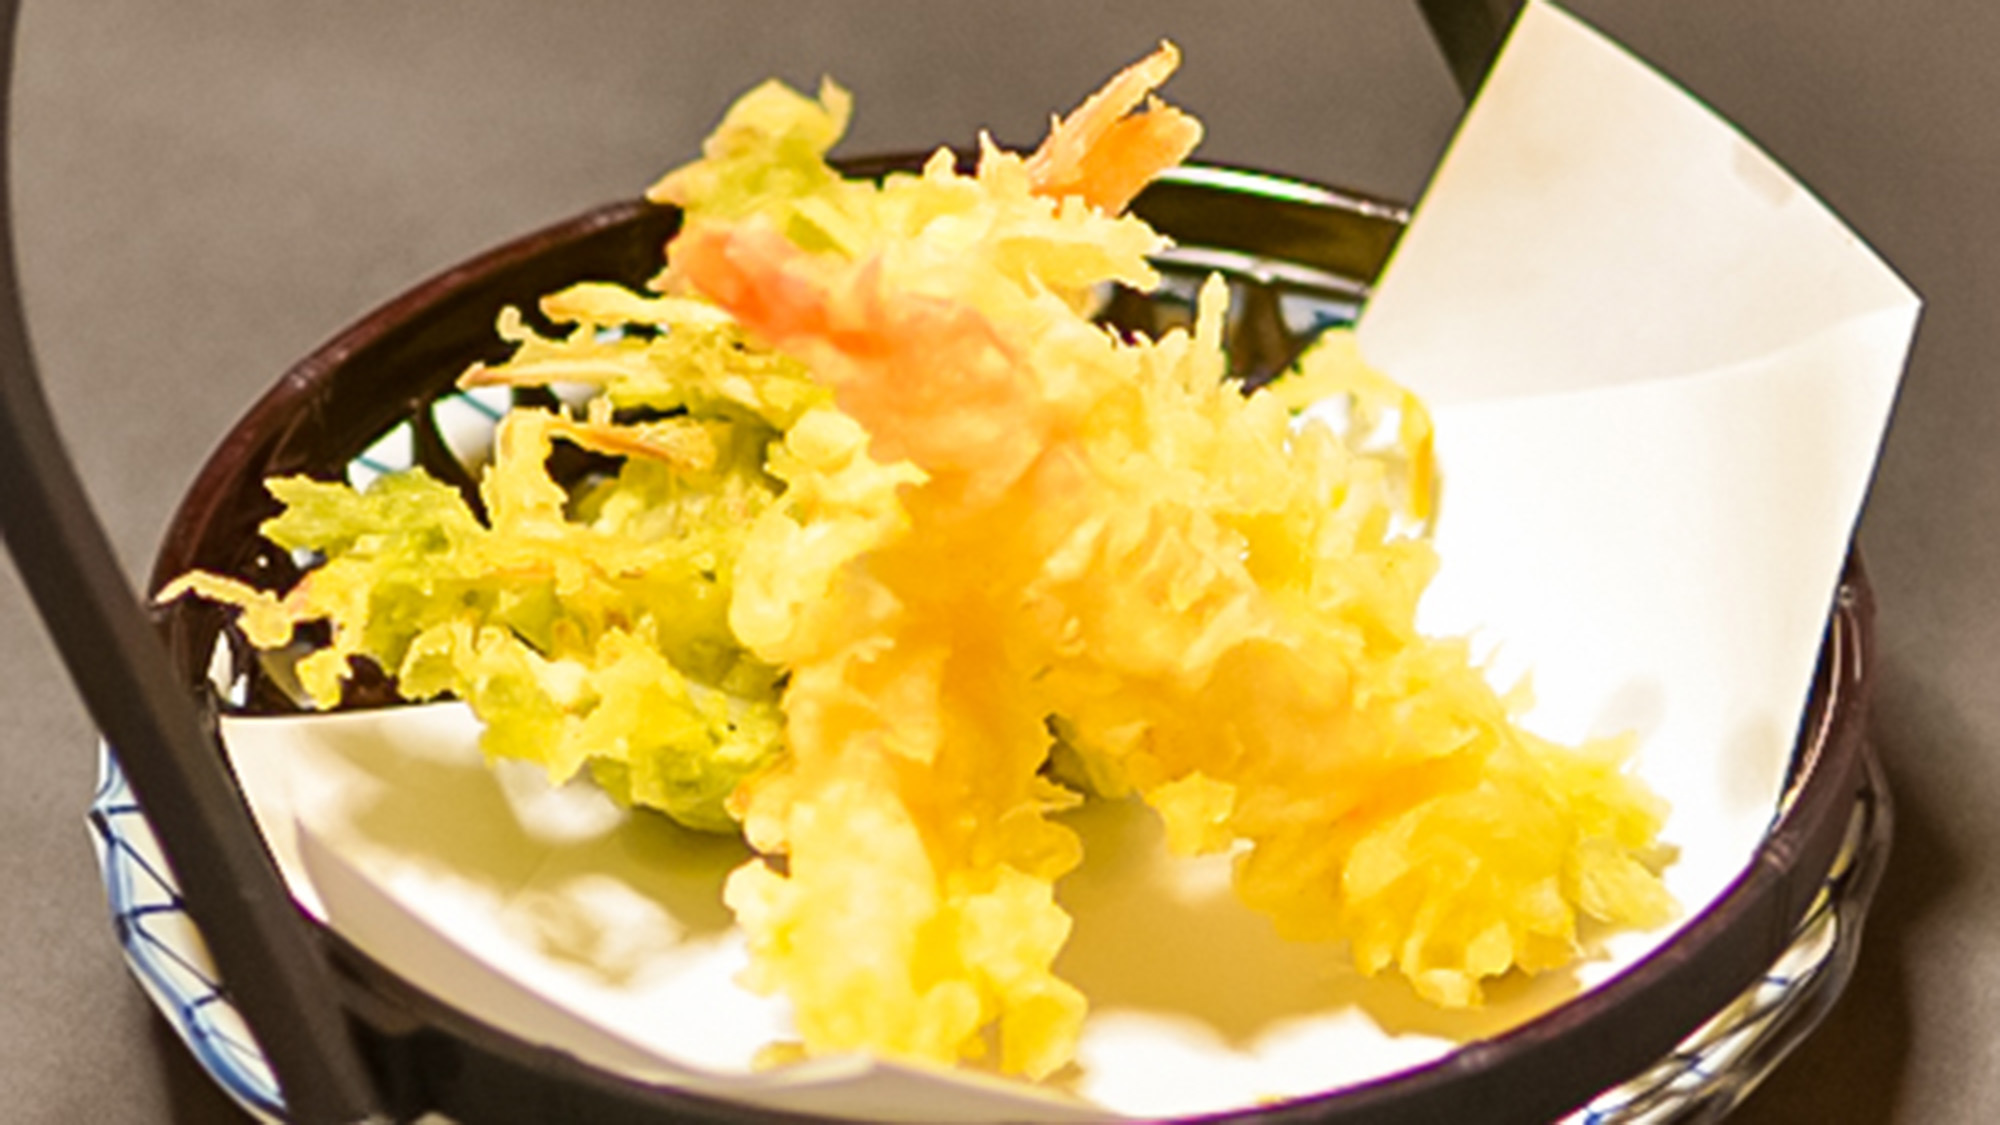 ・【お食事一例・天ぷら】サクッとジューシーな天ぷら